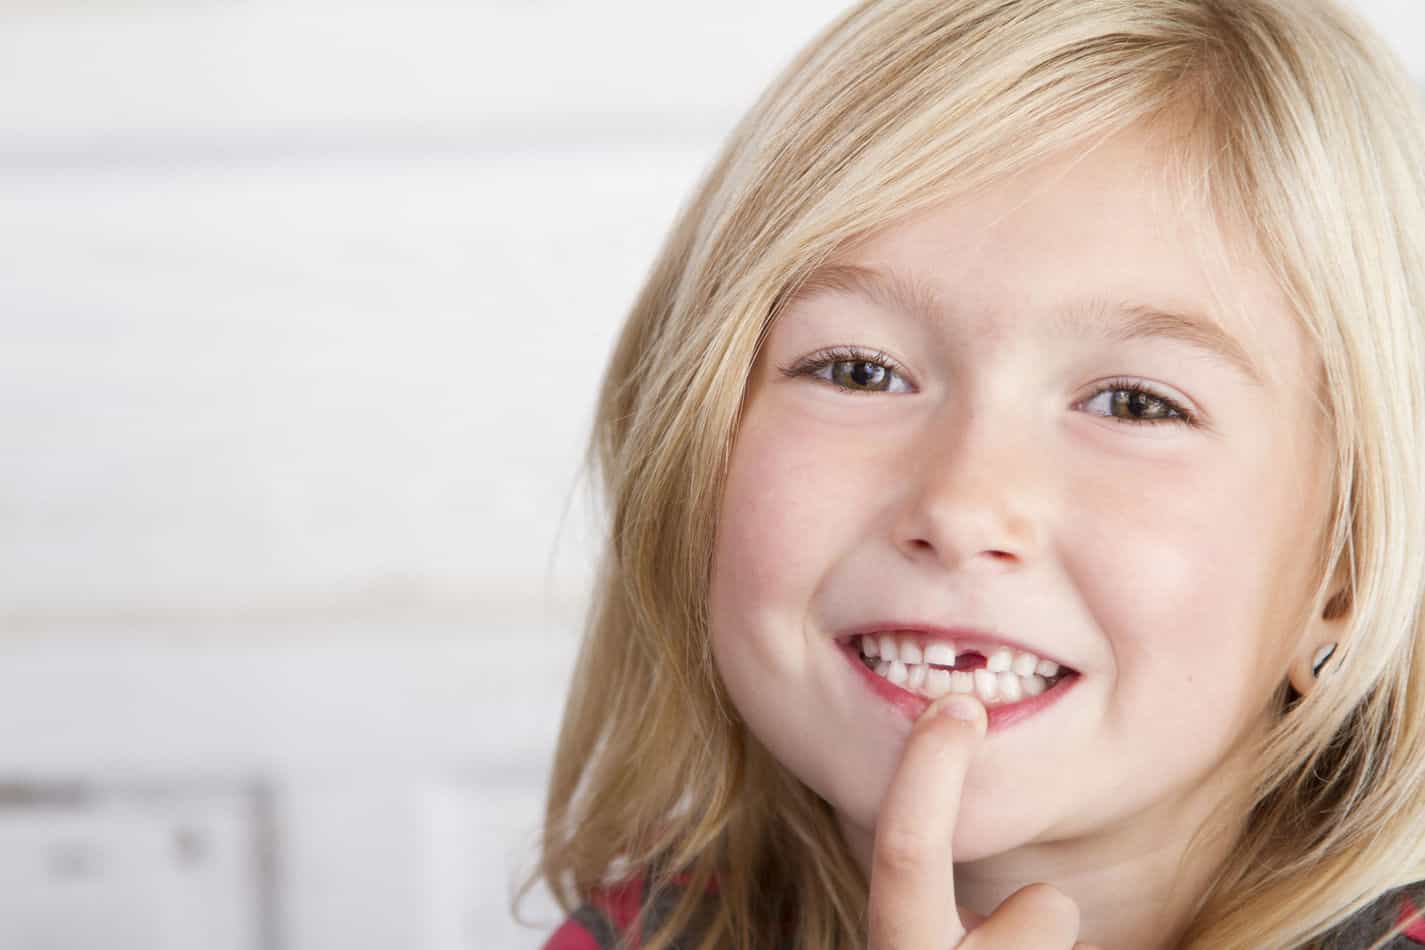 ¿Es normal si un niño de 7 años aún no ha perdido ningún diente?